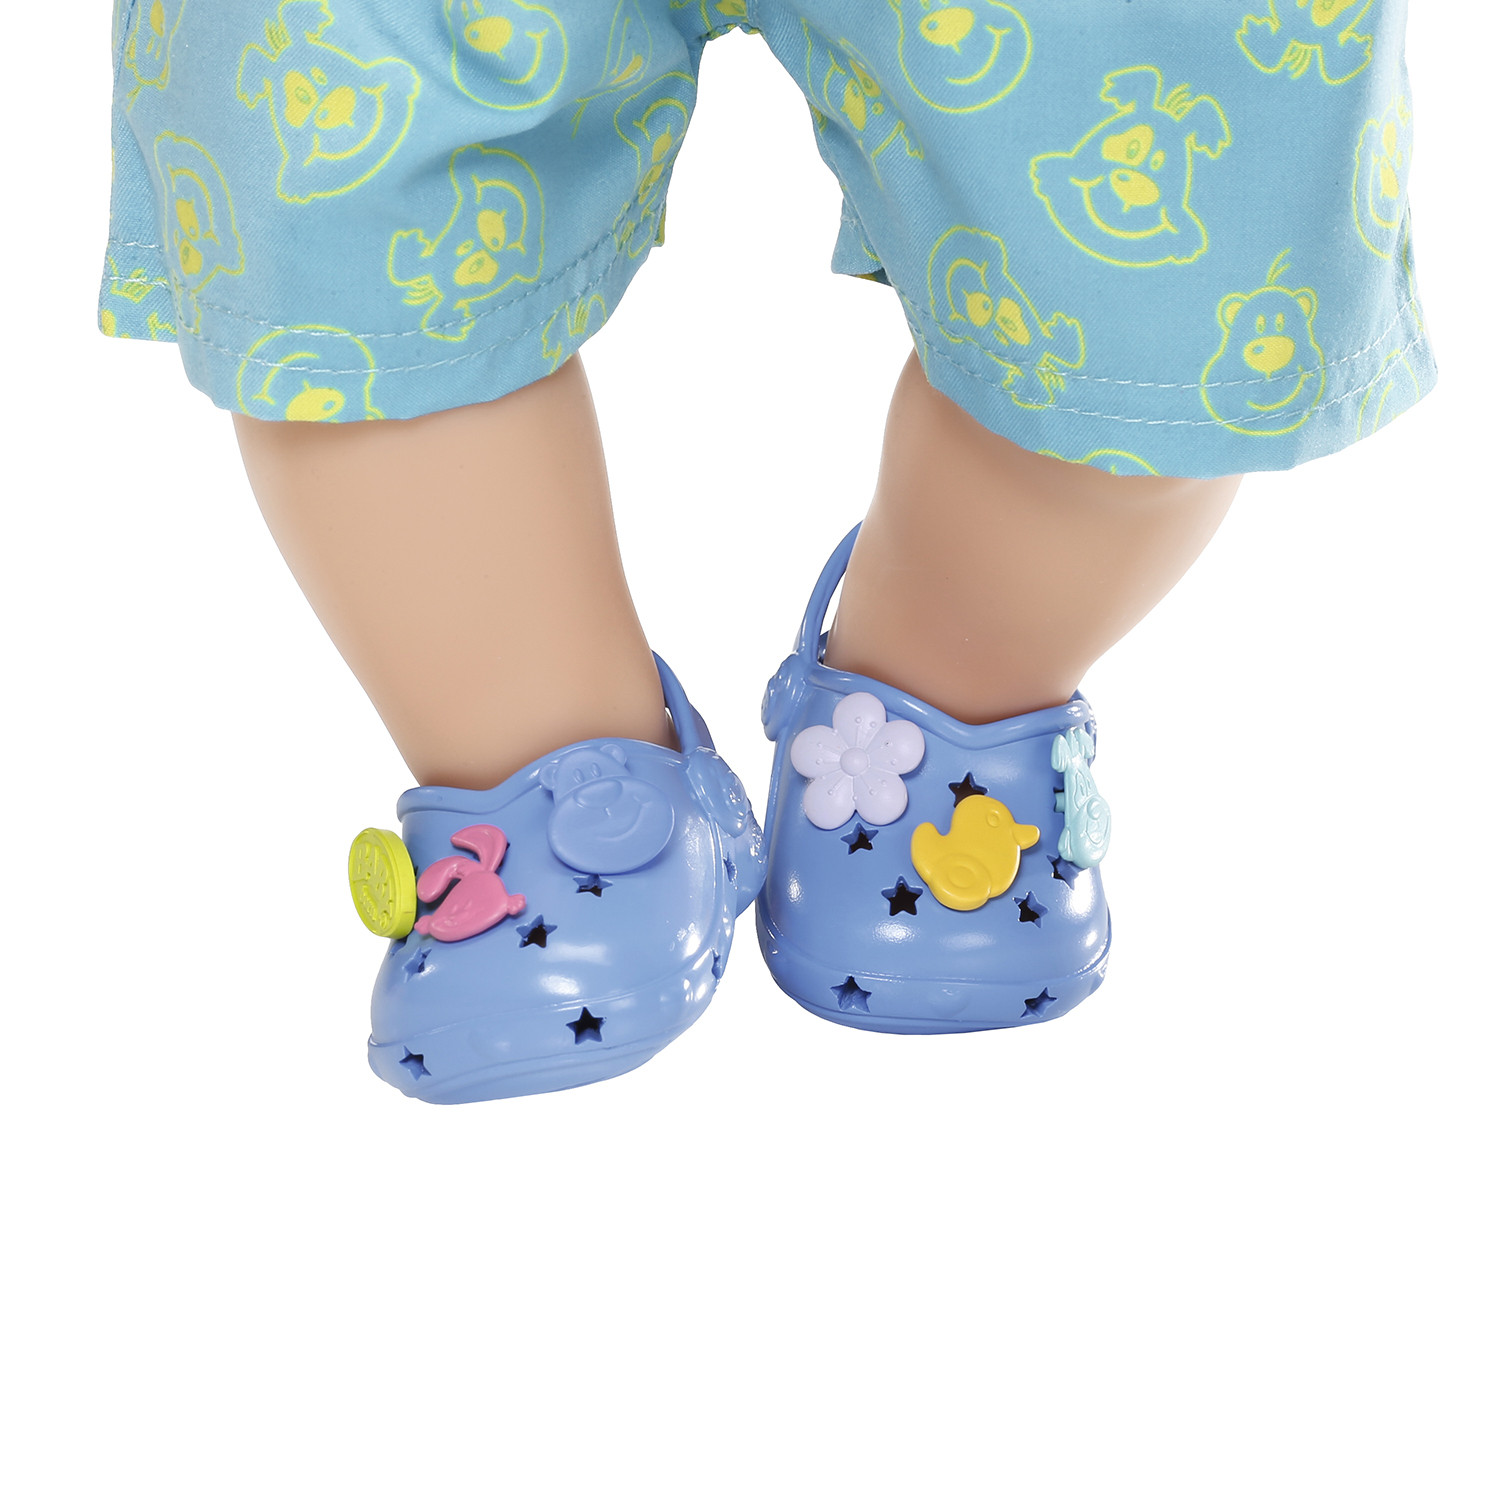 Обувь для куклы Baby born - Сандалии фантазийные, синие  